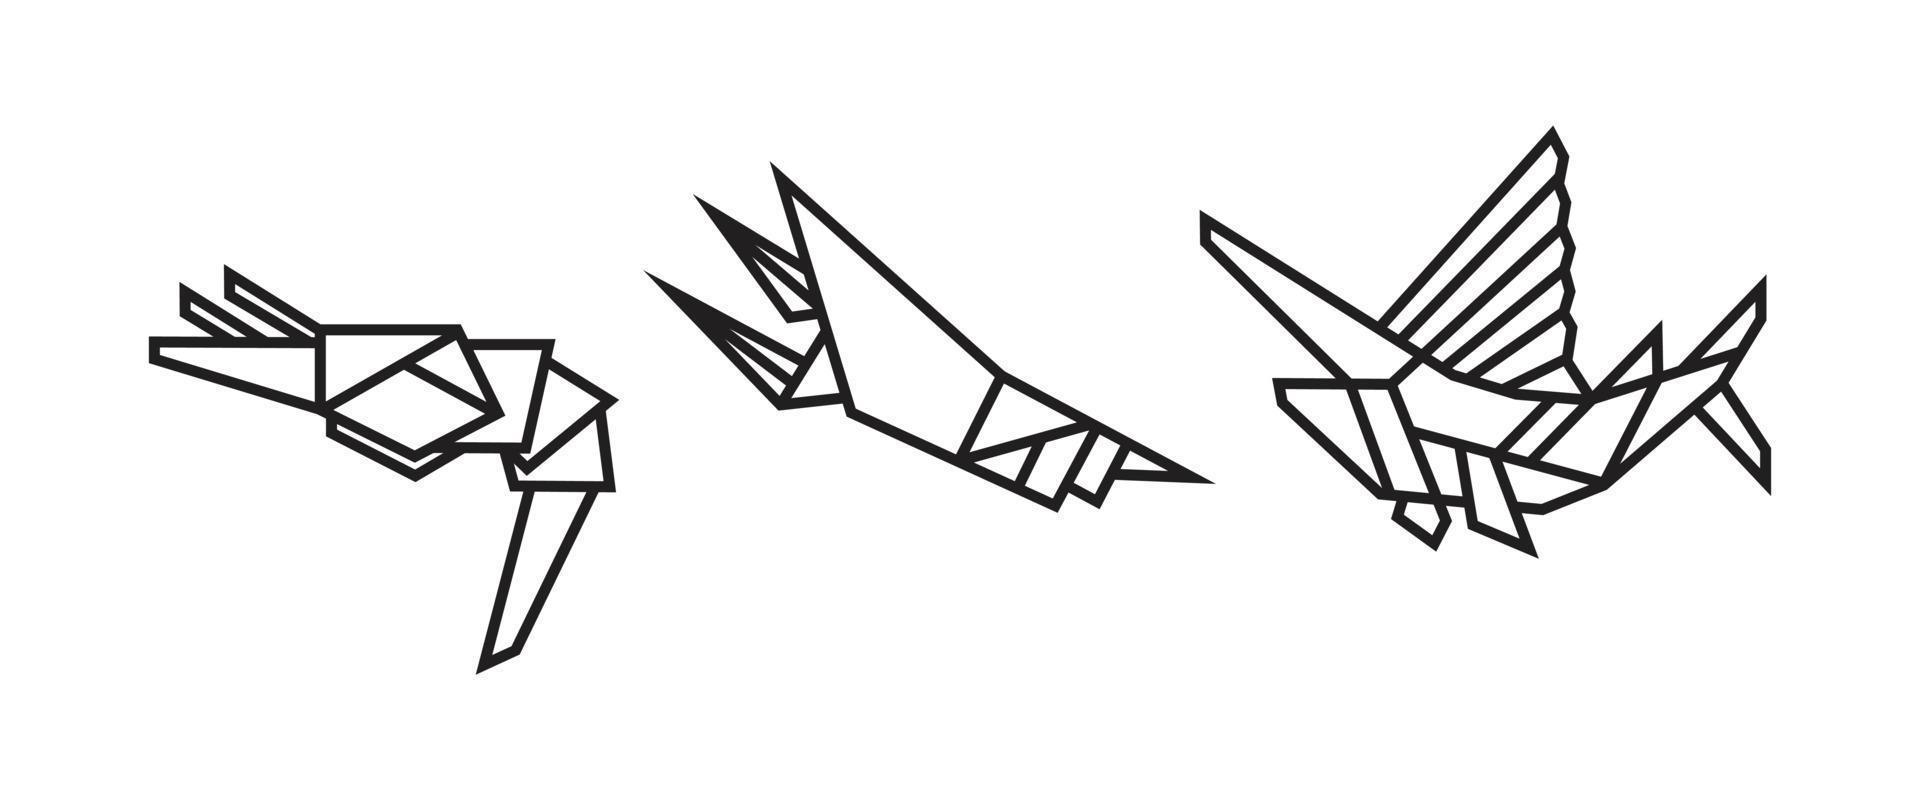 ilustrações de peixes em estilo origami vetor